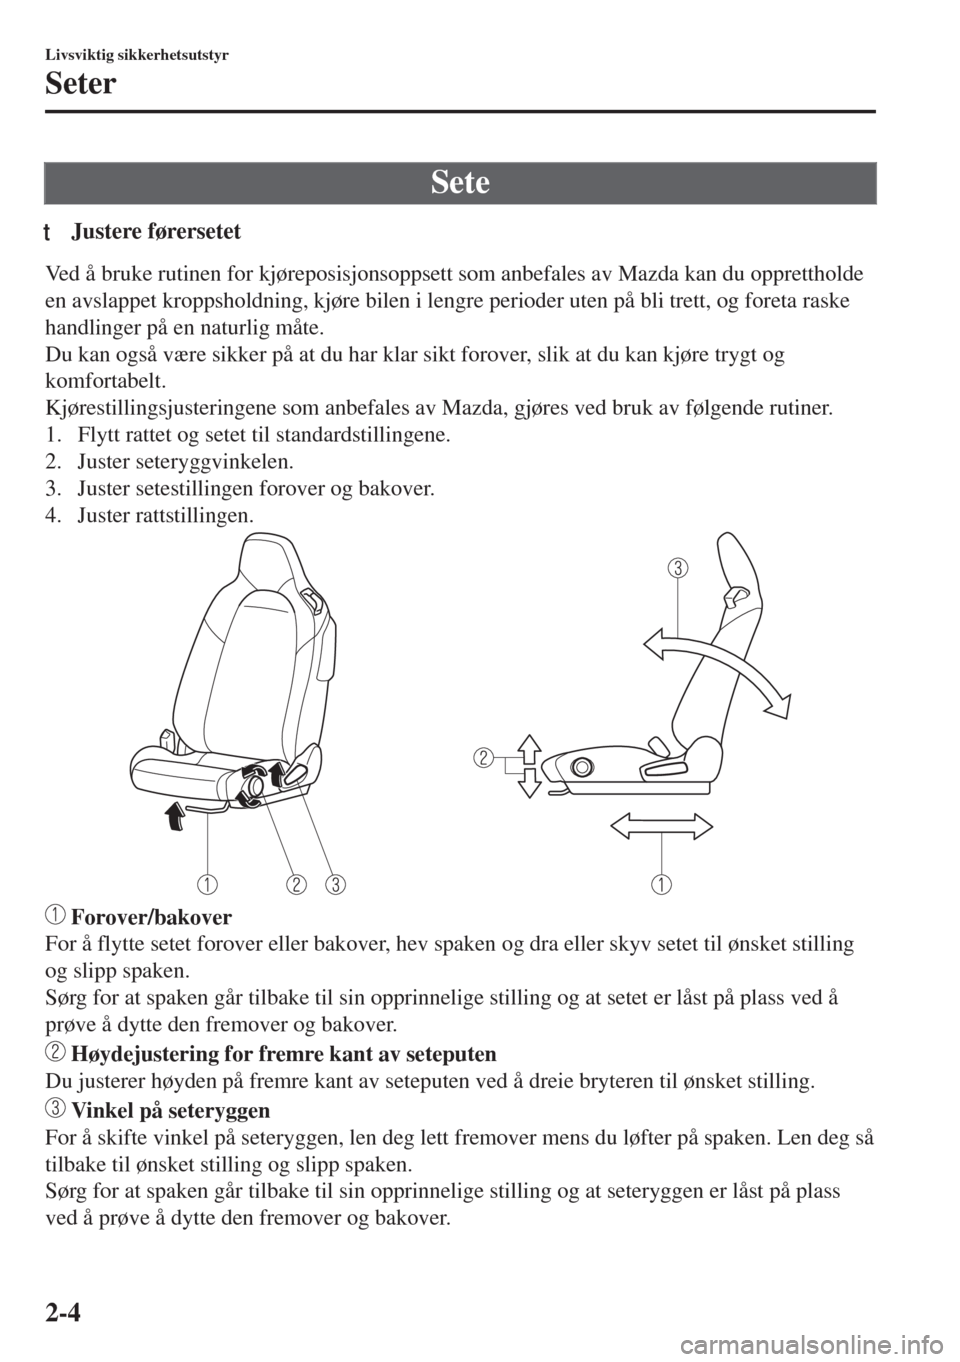 MAZDA MODEL MX-5 2018  Brukerhåndbok (in Norwegian) Sete
tJustere førersetet
Ved å bruke rutinen for kjøreposisjonsoppsett som anbefales av Mazda kan du opprettholde
en avslappet kroppsholdning, kjøre bilen i lengre perioder uten på bli trett, og 